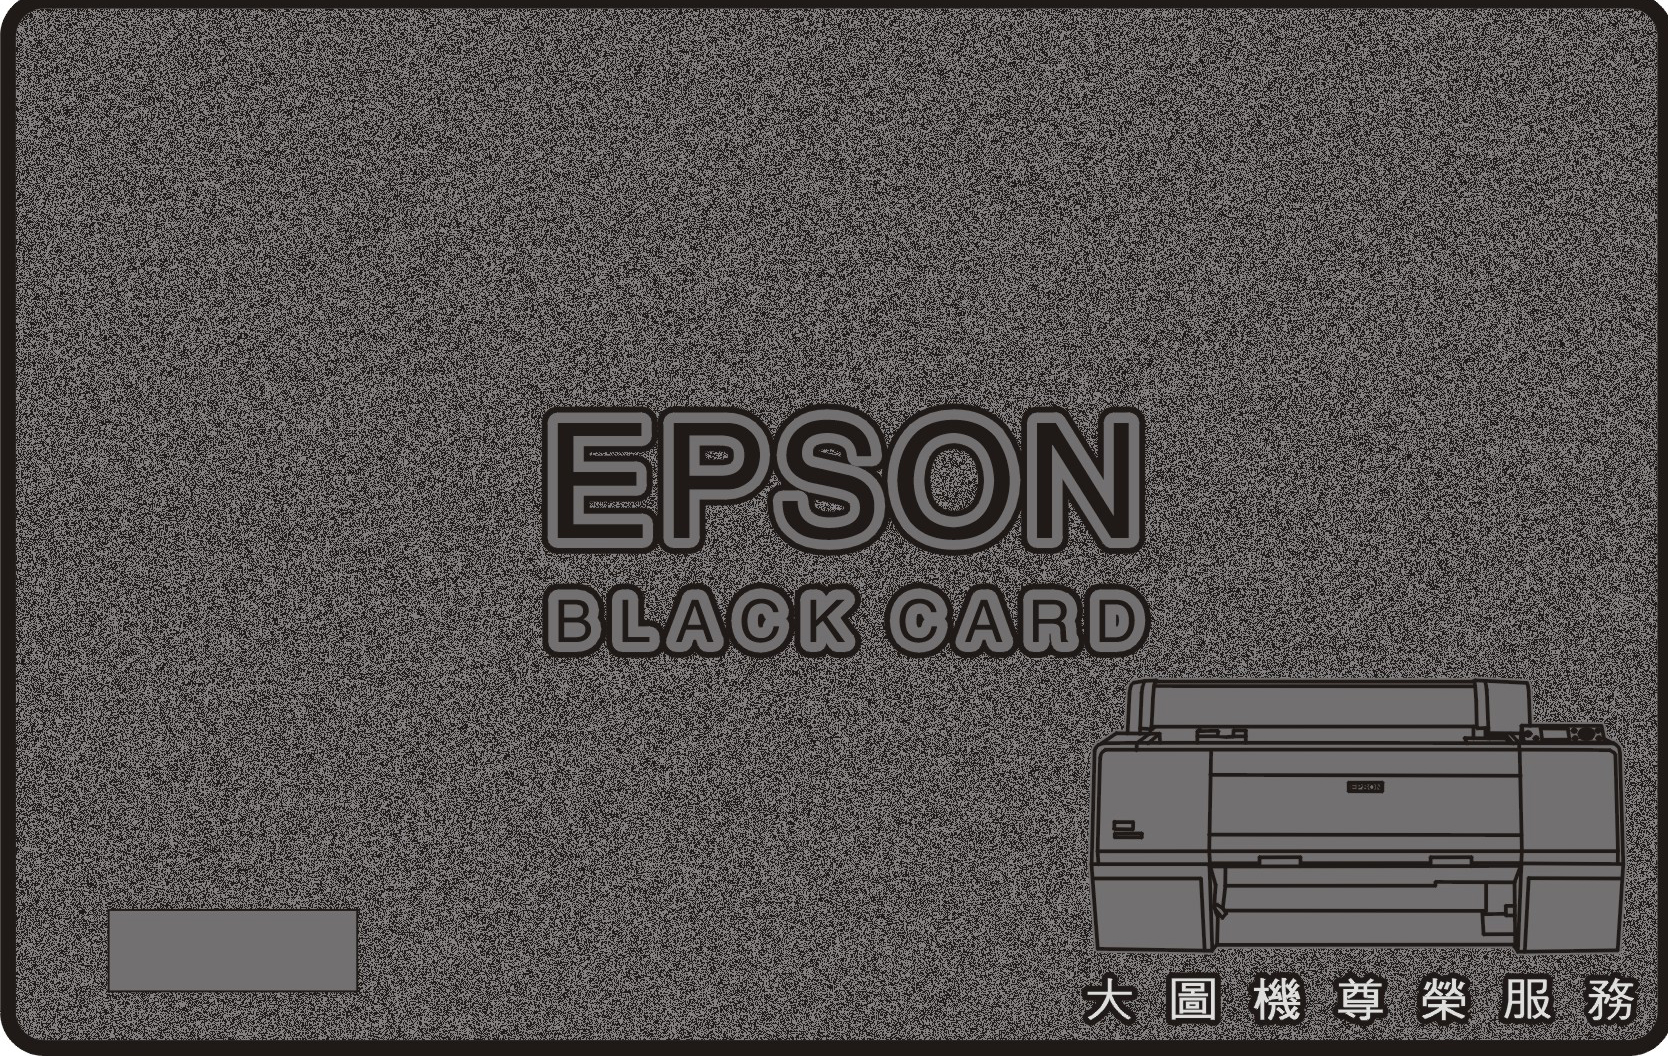 EPSON金屬黑卡